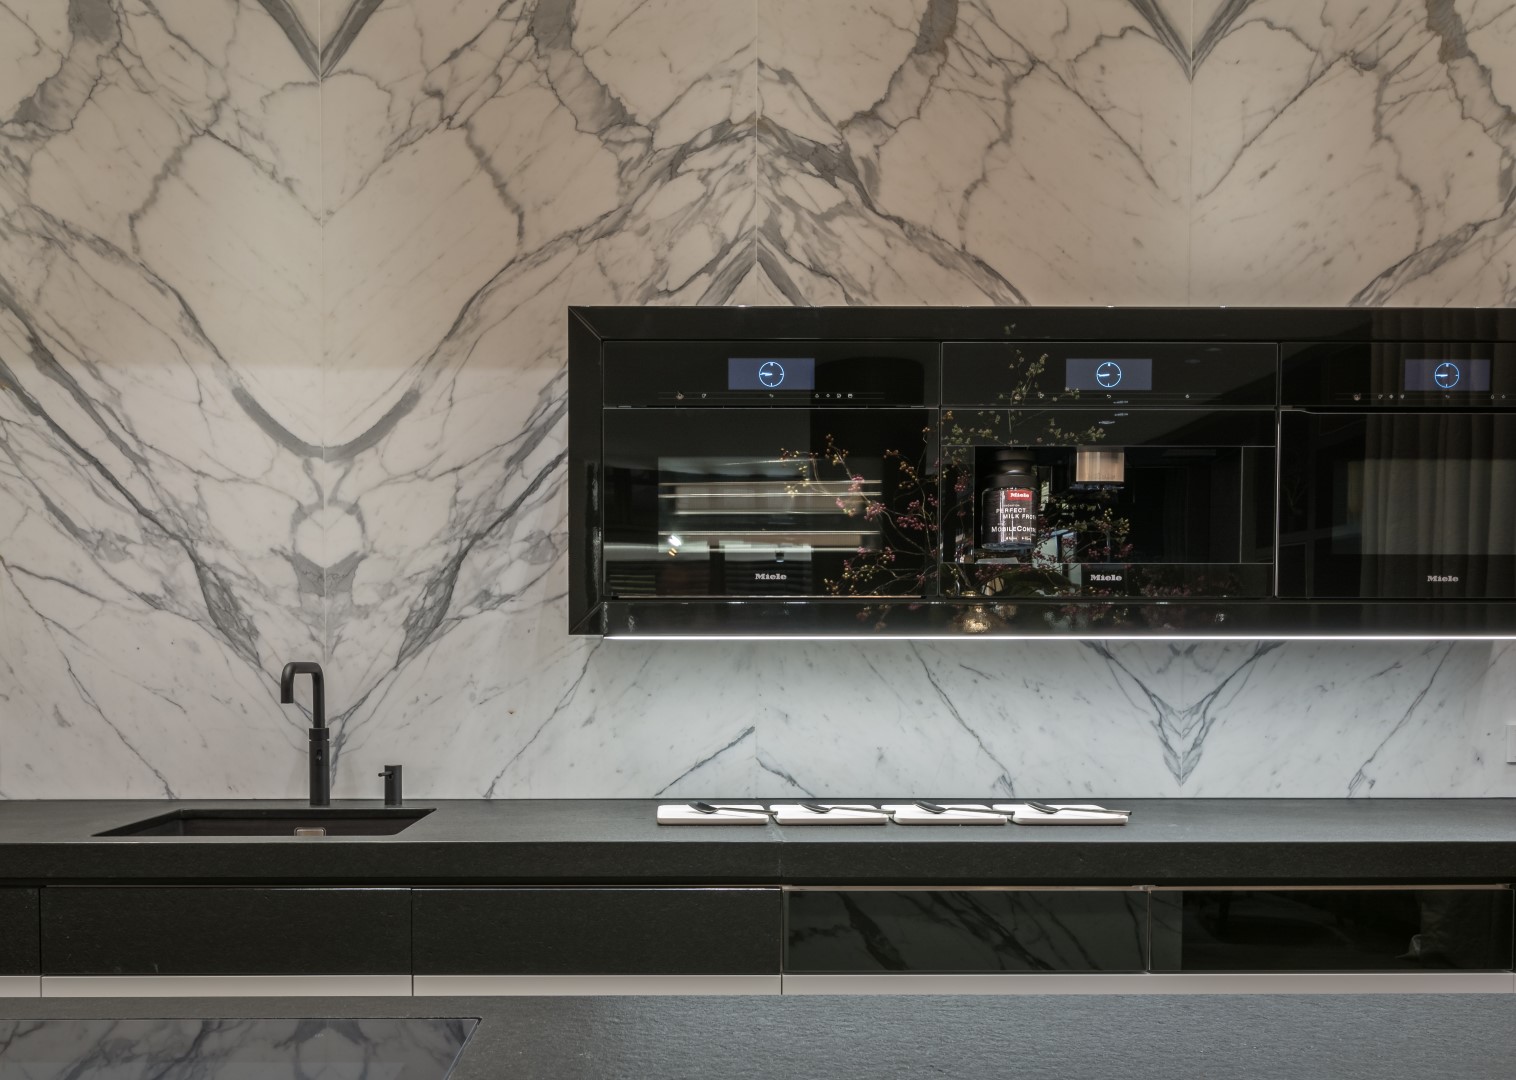 Rückwand aus Naturstein und Miele-Geräten in einer maßgeschneiderten Küche mit klassischem Schwarz-Weiß-Muster in modernem Touch.